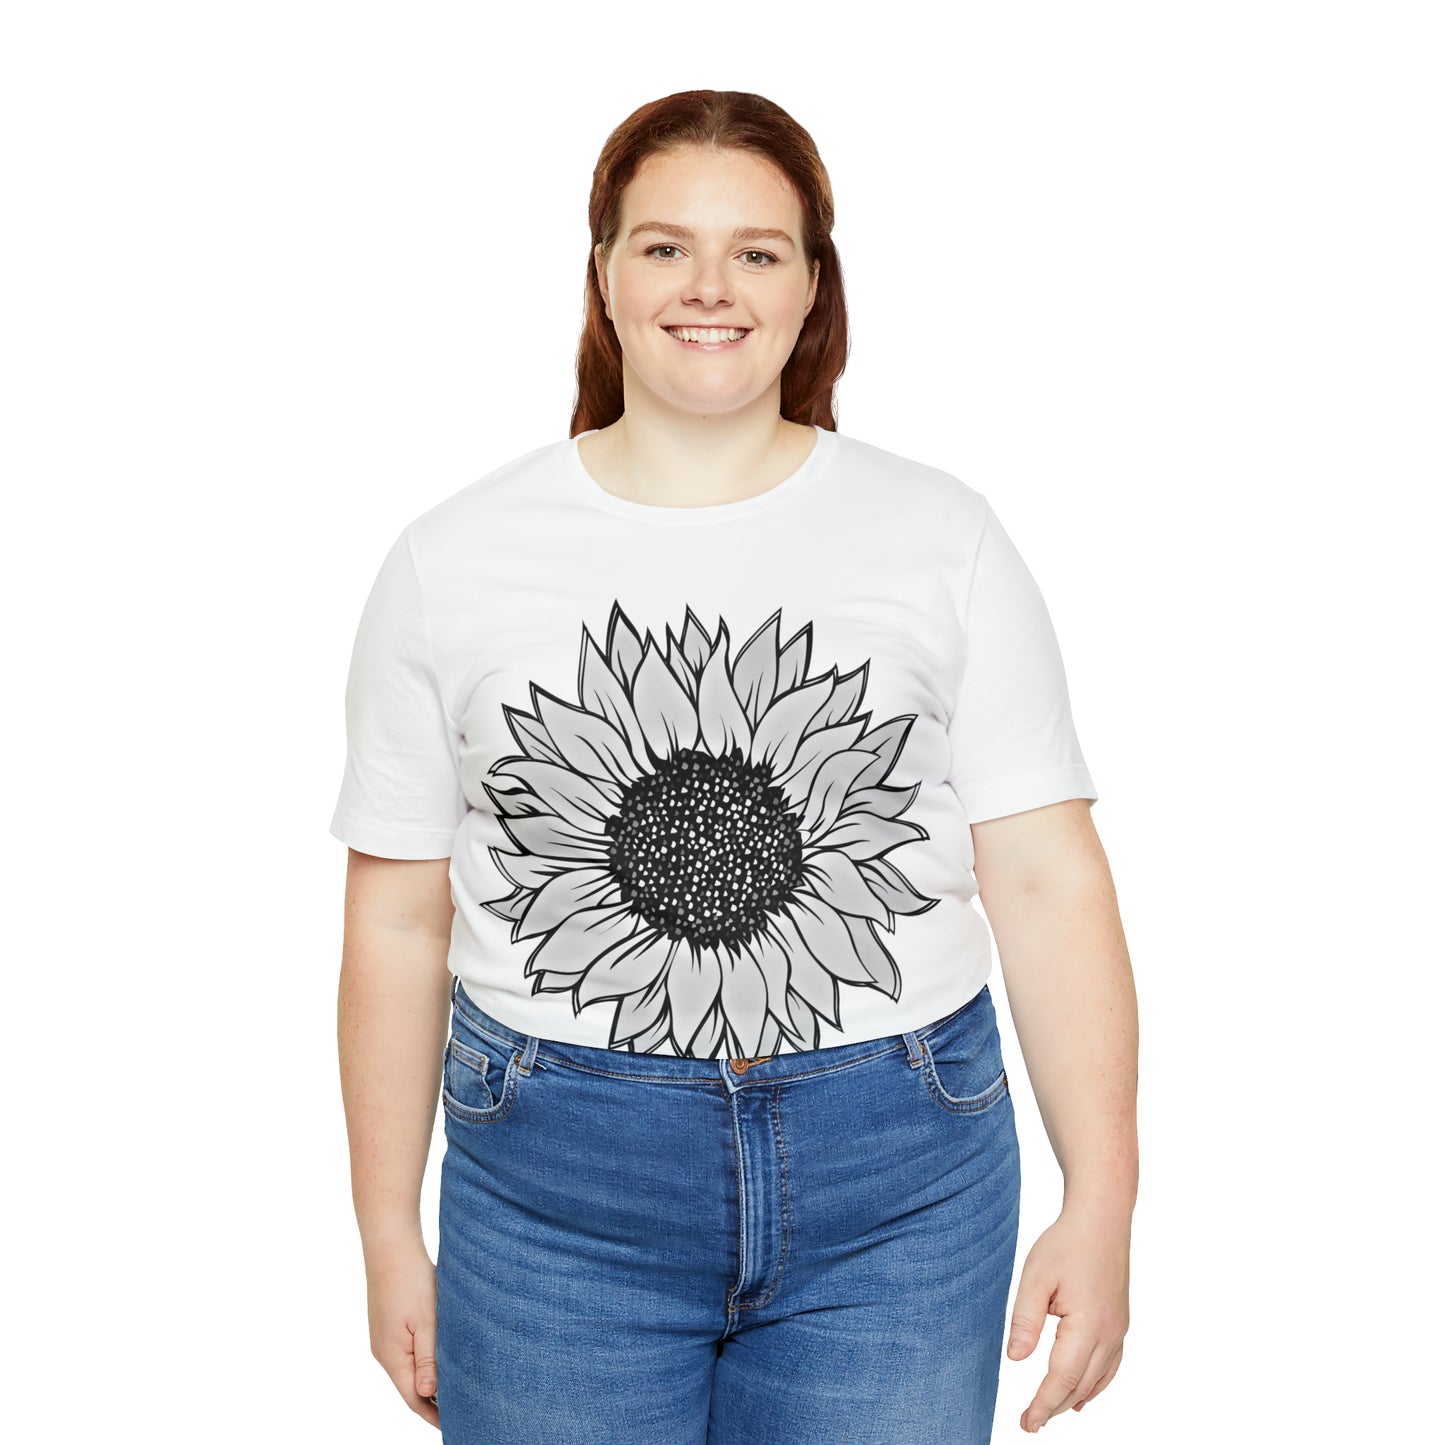 Sunflower Shirt, Floral Tee Shirt, Flower Shirt, Garden Shirt, Womens Fall Summer Shirt Sunshine Tee, Gift for Gardener, Nature love